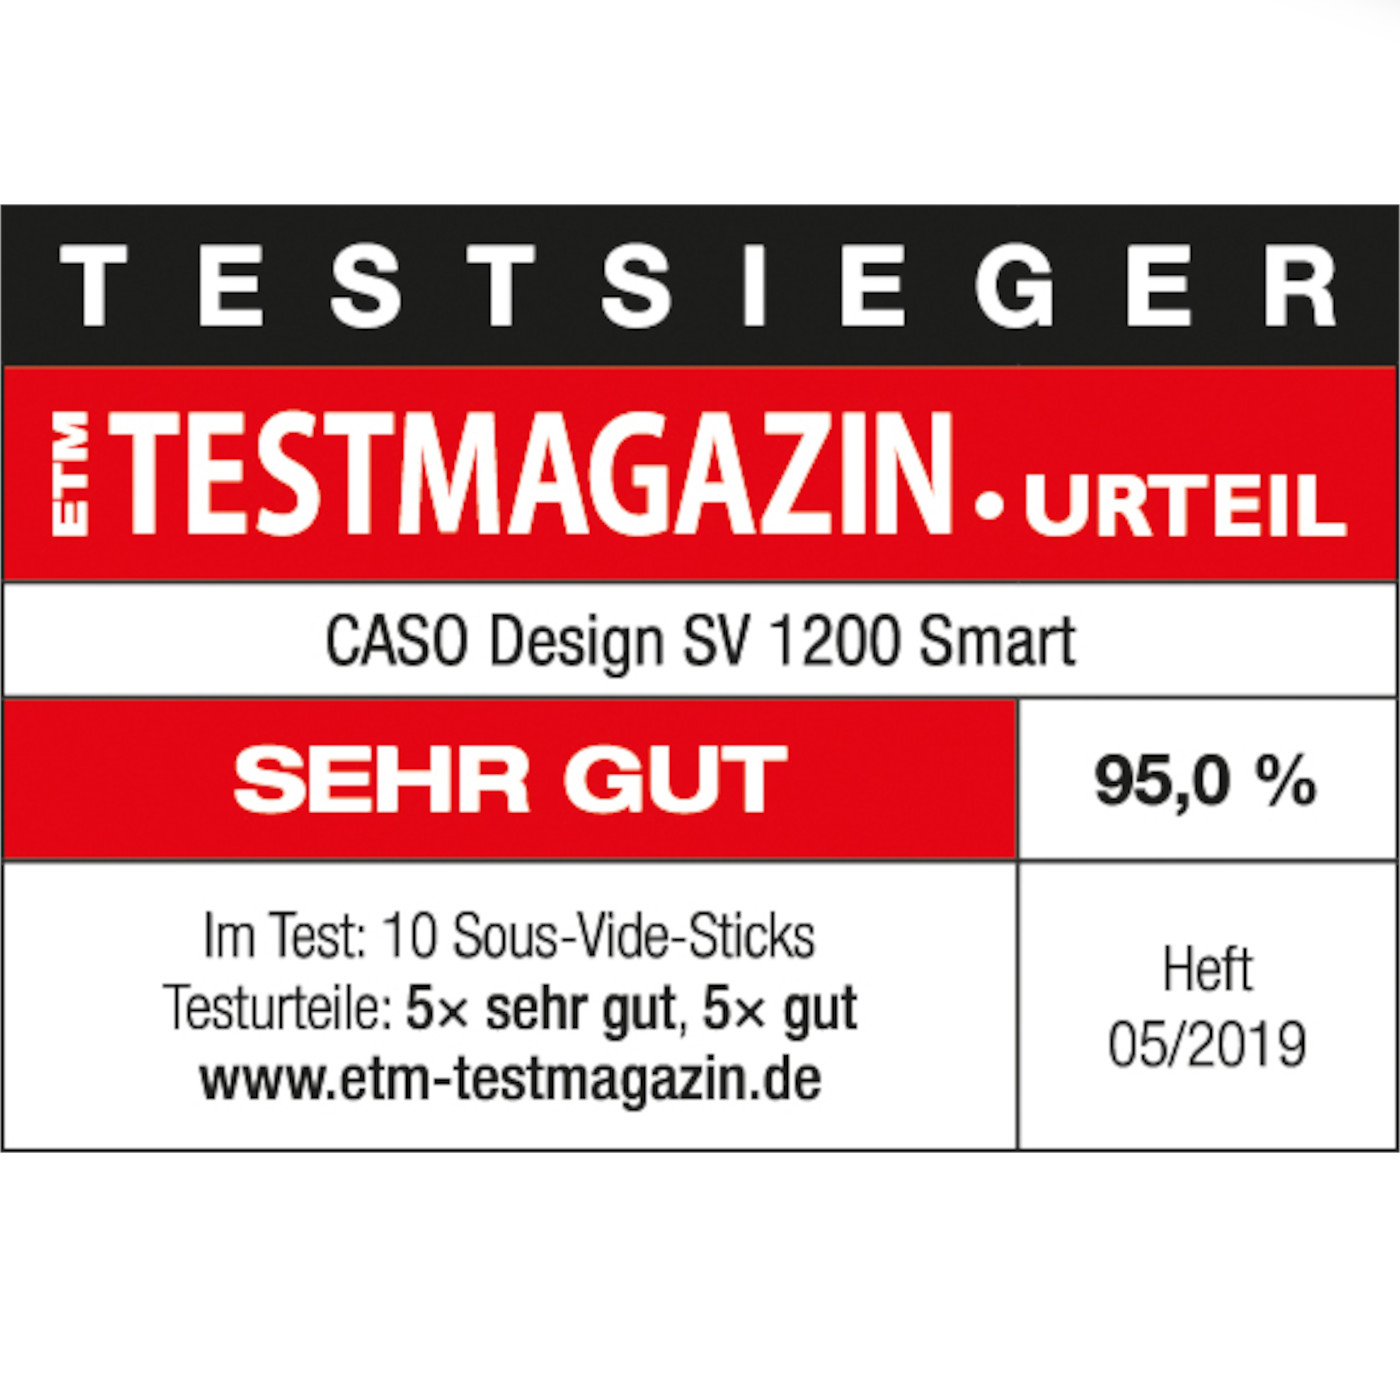 CASO GERMANY - SOUS VIDE RONER 1327 SV 1200 PRO SMART CASO